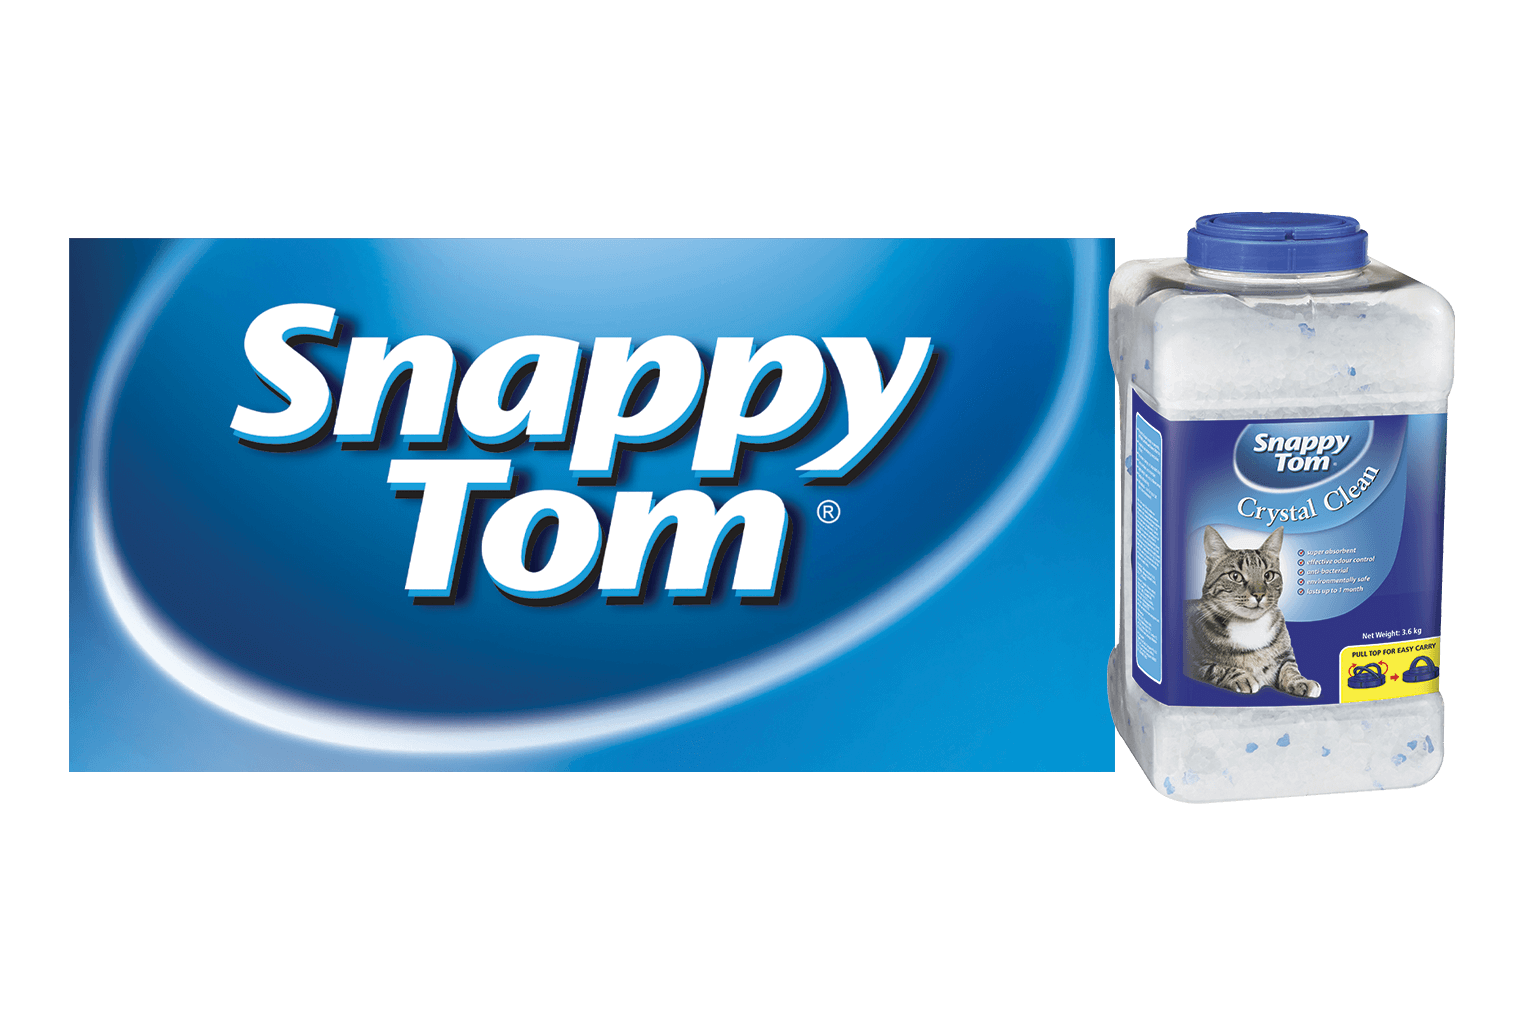 snappy tom